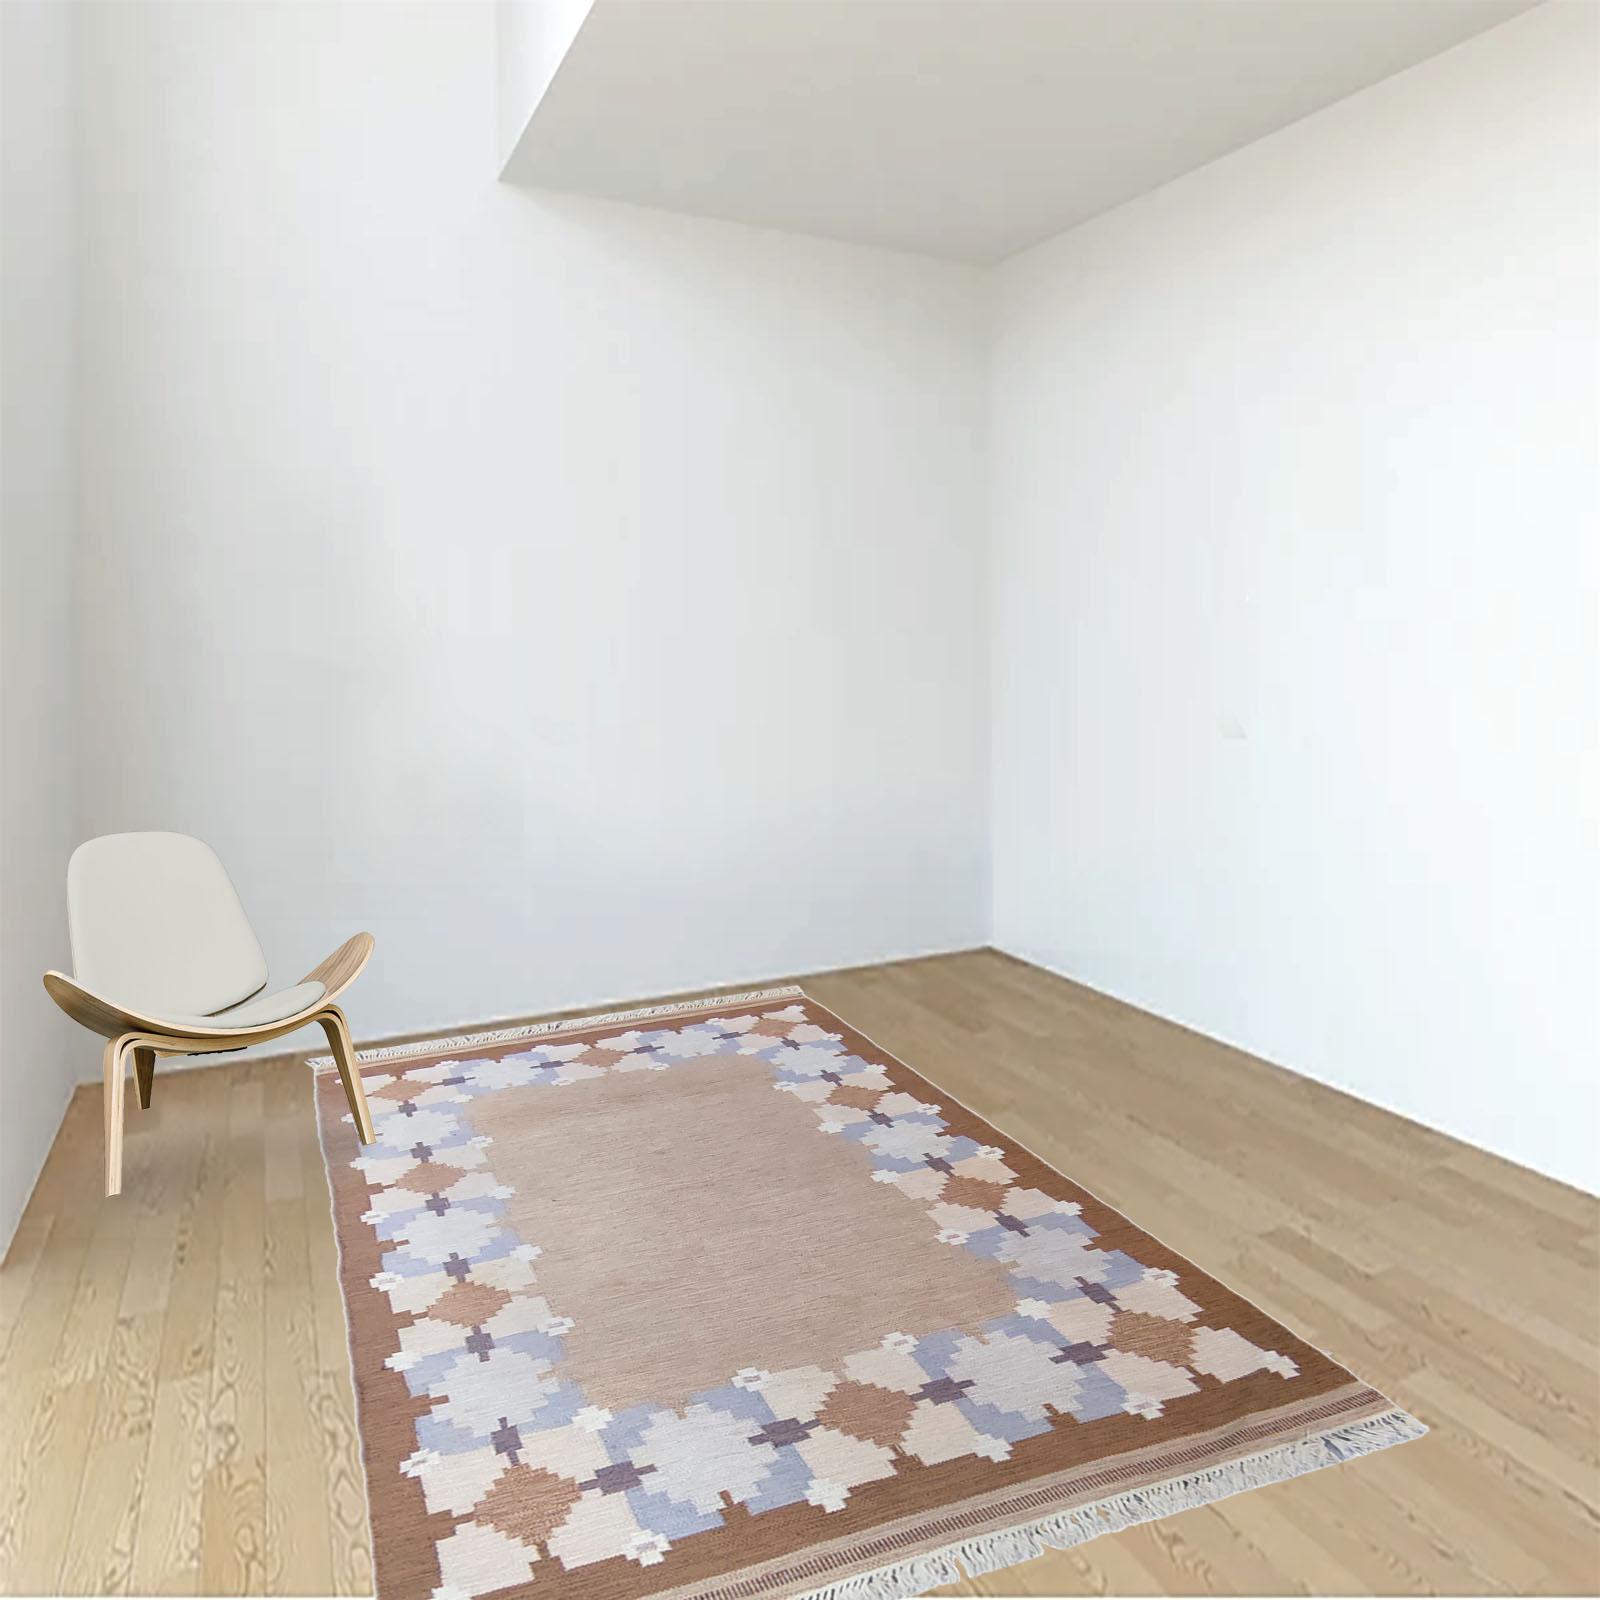 Schwedischer Vintage-Teppich Rollakan von Gitt Grannsjo, mit den Maßen 200x288 cm. 
Mit seinem geometrischen Design verkörpert dieser handgewebte schwedische Kilim-Teppich aus Wolle auf wunderbare Weise die Schlichtheit des modernen skandinavischen